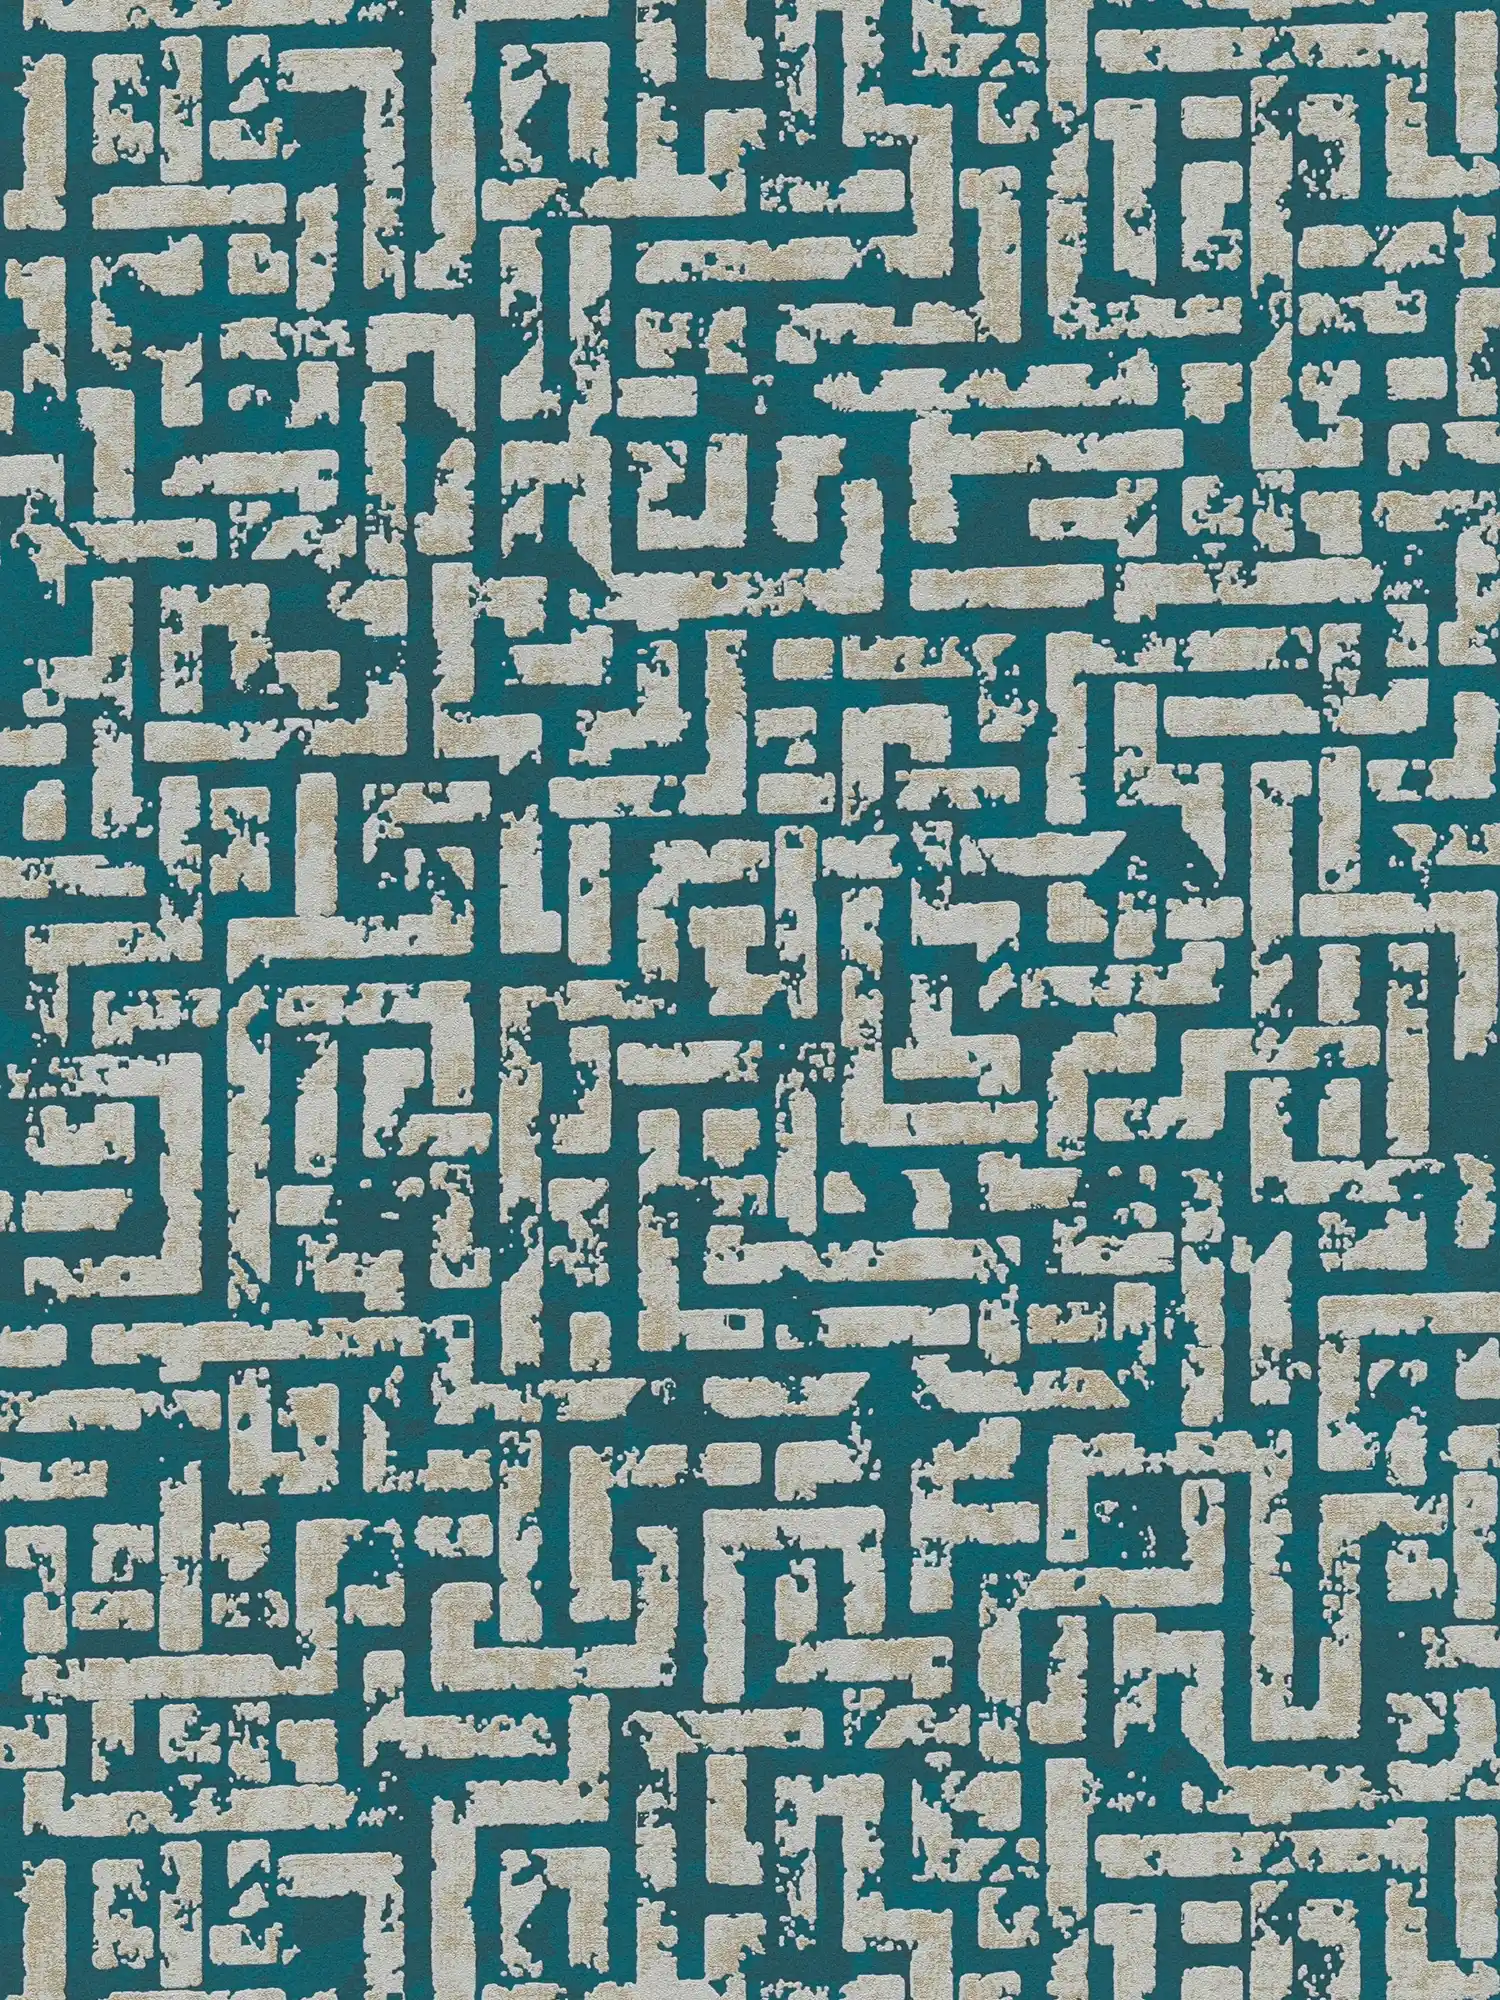 Ethno behang met grafisch reliëfontwerp - blauw, groen, beige
